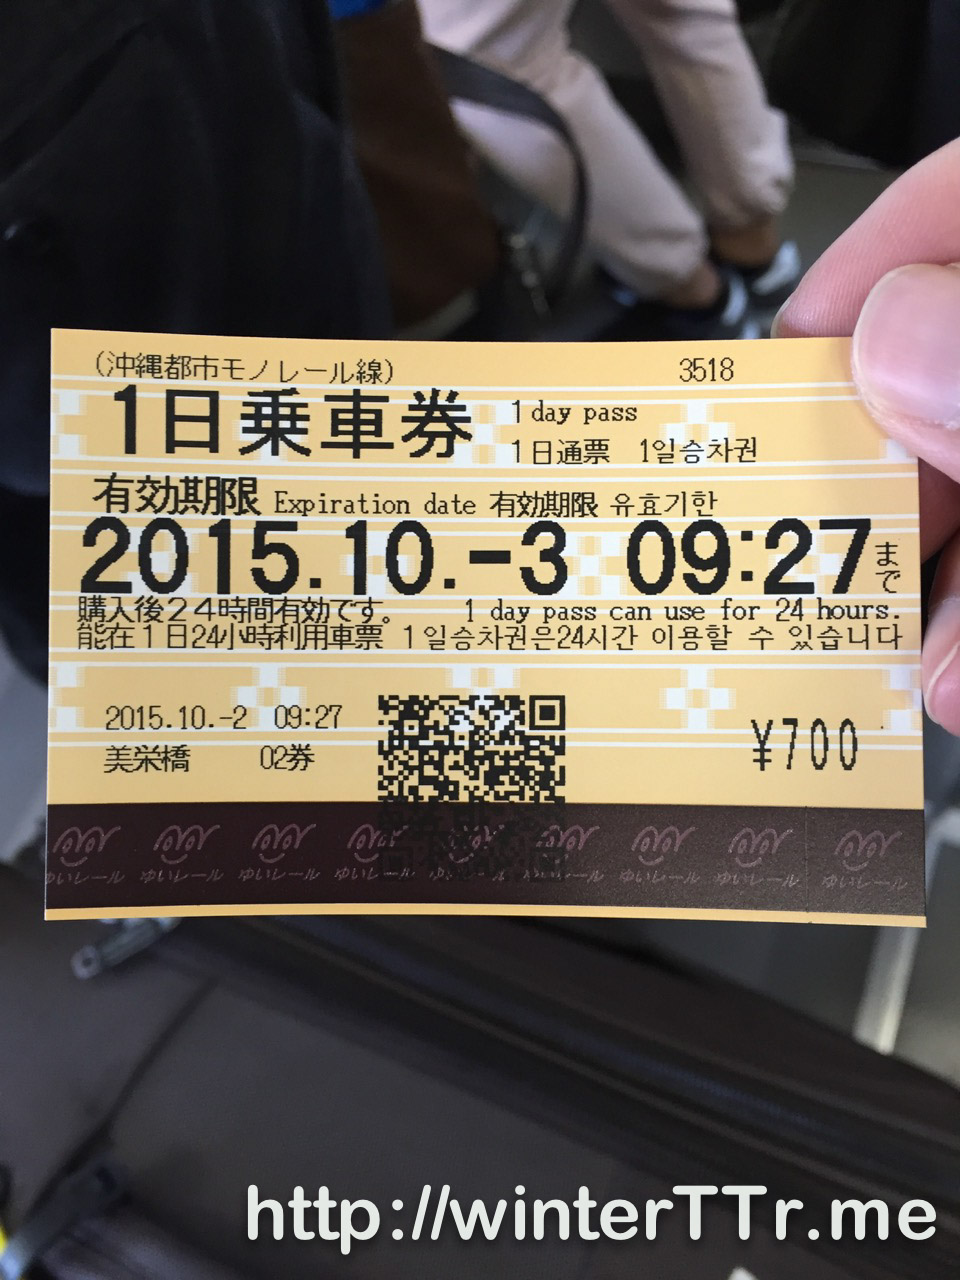 yui-rail-one-day.jpg